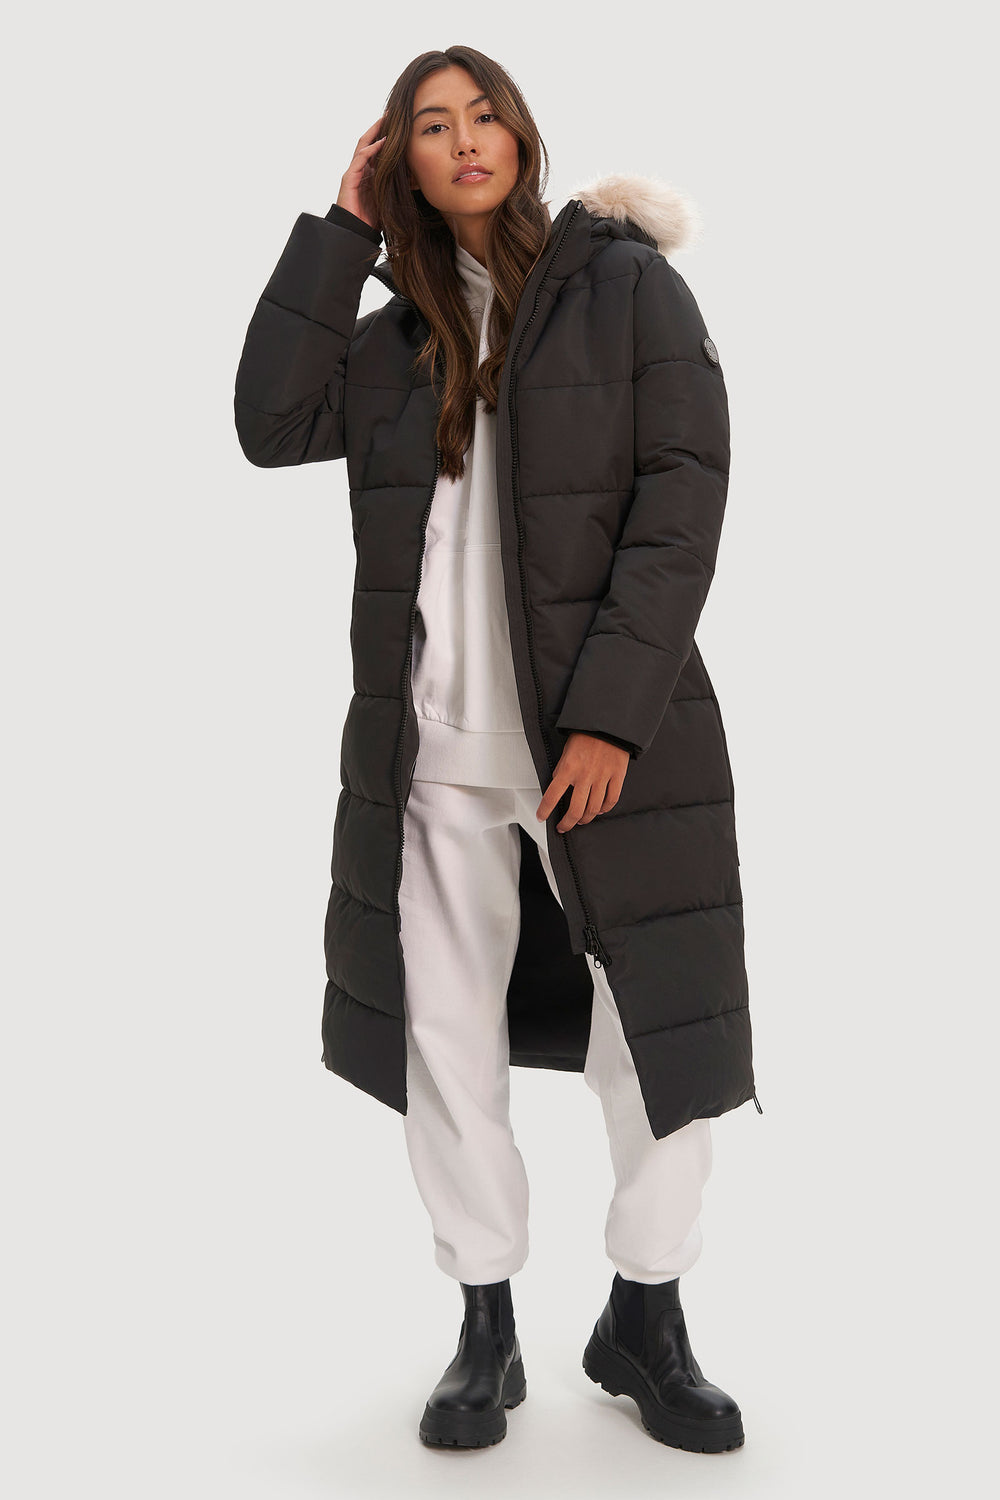 AMDBEL Coats for Women Trendy Warm Fleece Lined Long Parka